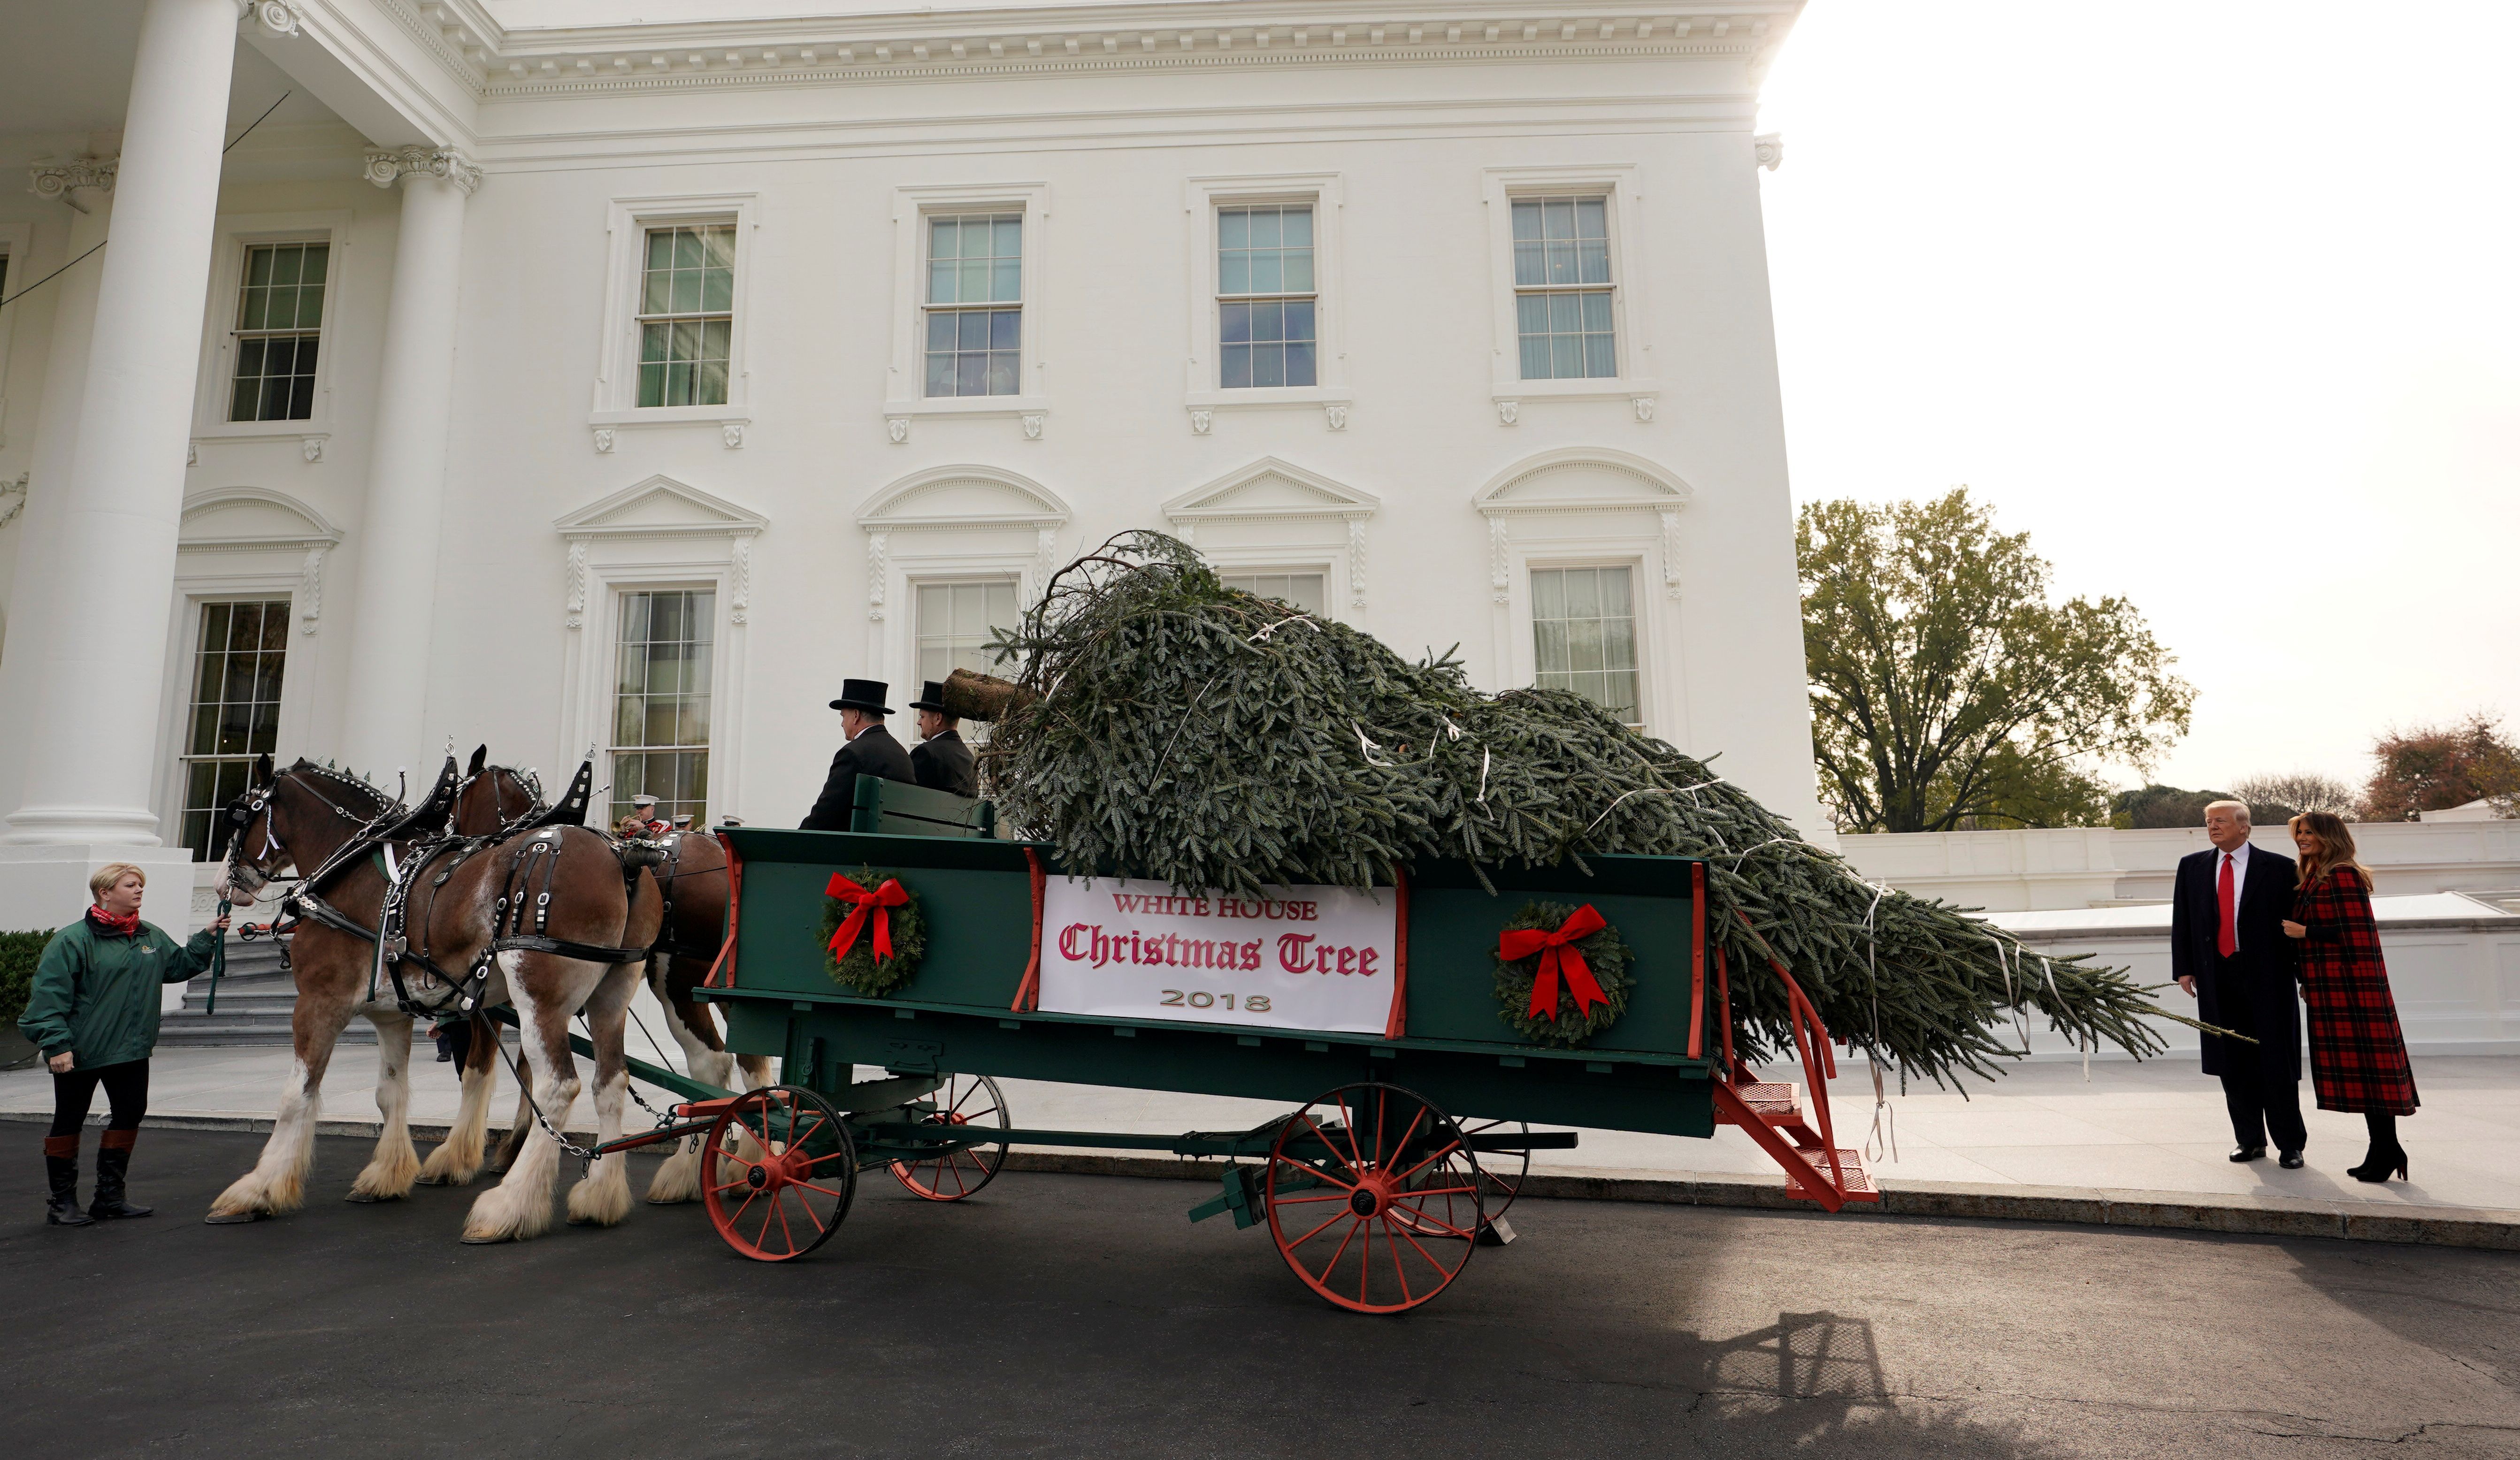 2018 nimmt Melania gemeinsam mit ihrem Mann Donald Trump den Weihnachtsbaum in Empfang.